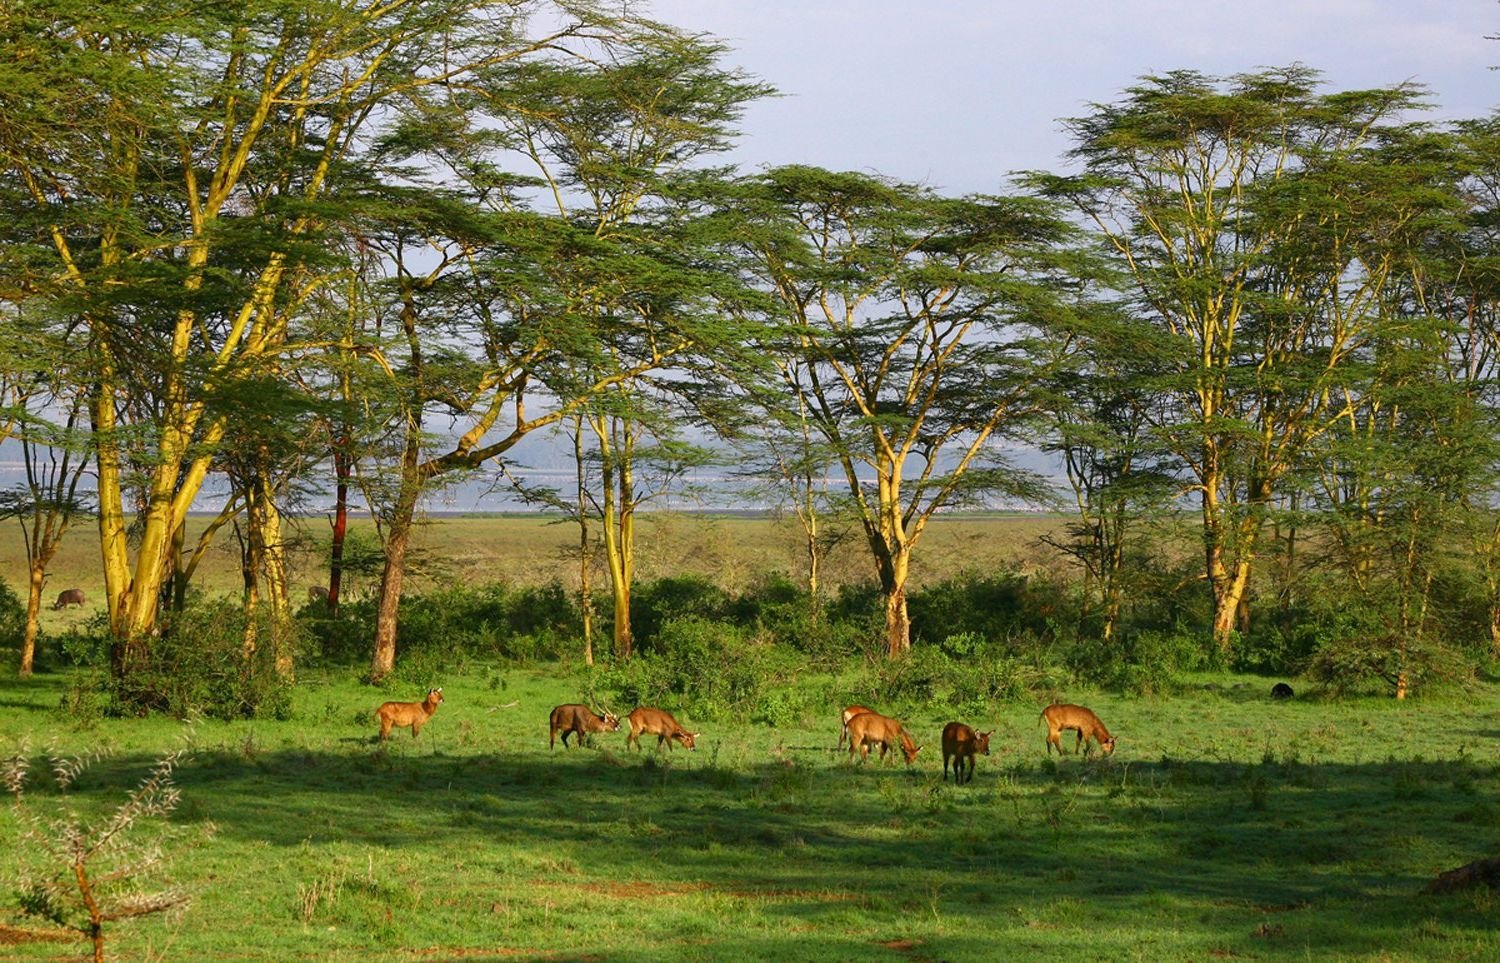 Климат редколесья южной америки. Национальный парк Серенгети Танзания. Саванна Восточной Африки Савана. Растительный мир субэкваториального пояса Африки. Серенгети Танзания дерево львица.